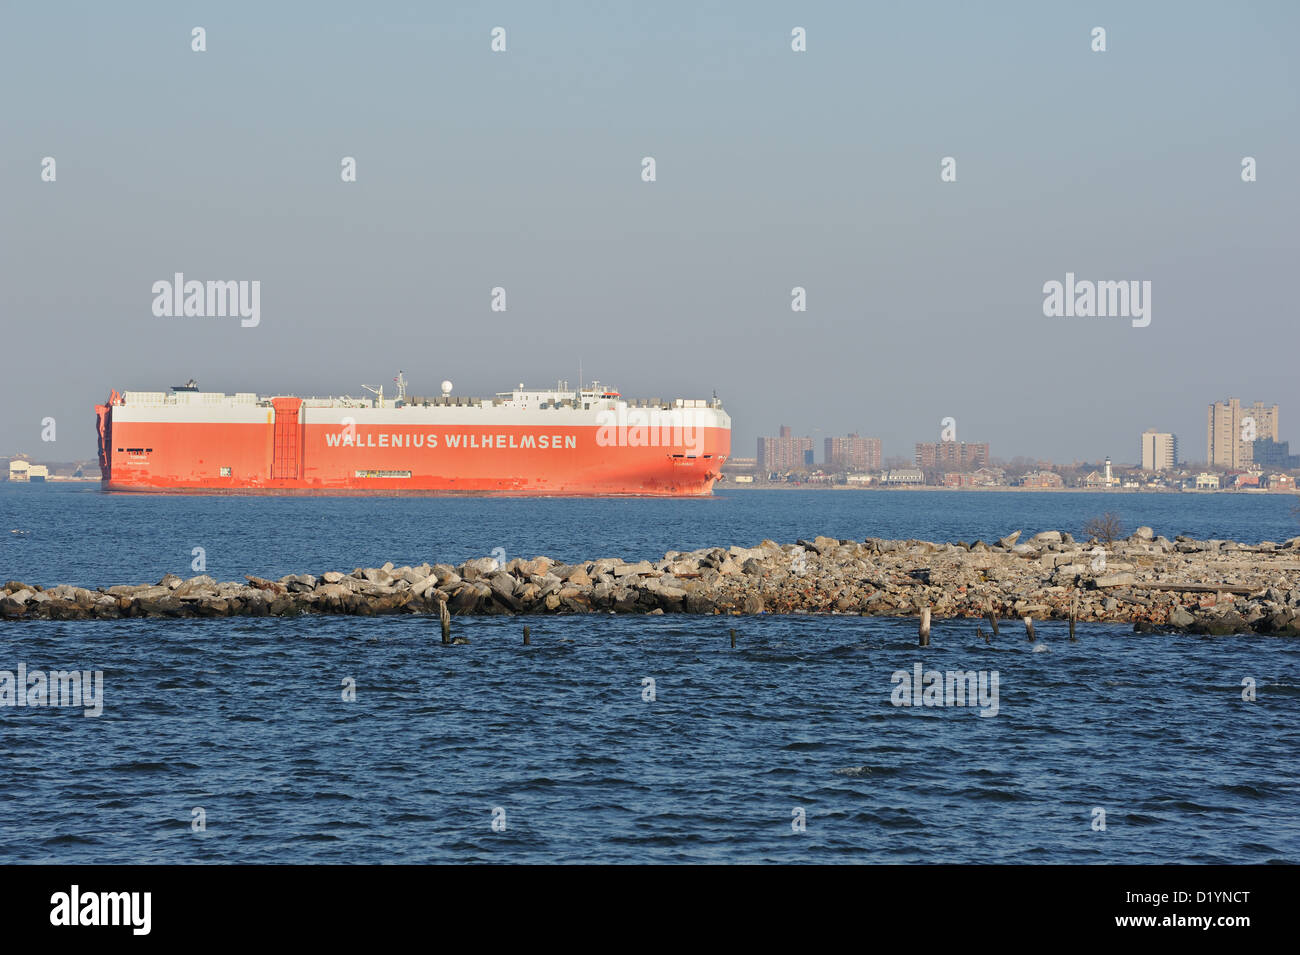 Wallenius Wilhelmsen Schiff ausgelegt für schwere Ladung wie Automobile, Coney Island im New Yorker Hafen untere Bucht verabschiedet. Stockfoto